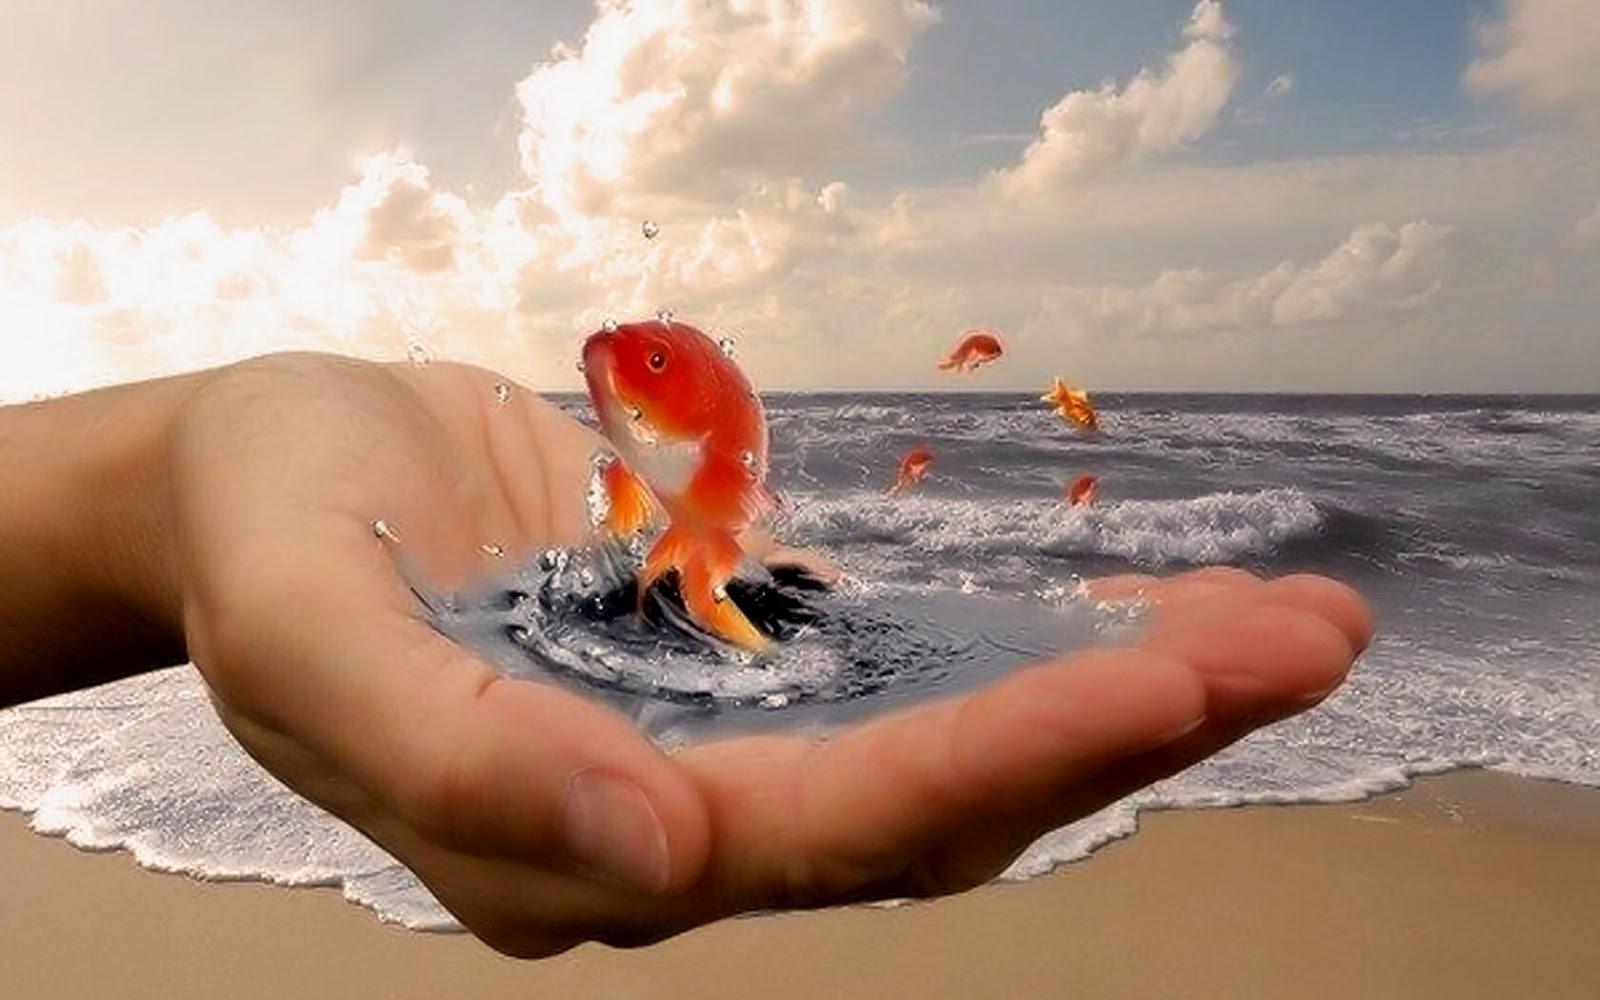 Увлекательной жизни. Золотая рыбка в руках. Золотая рыбка исполняет желания. Исполнения всех желаний. Добро у моря.